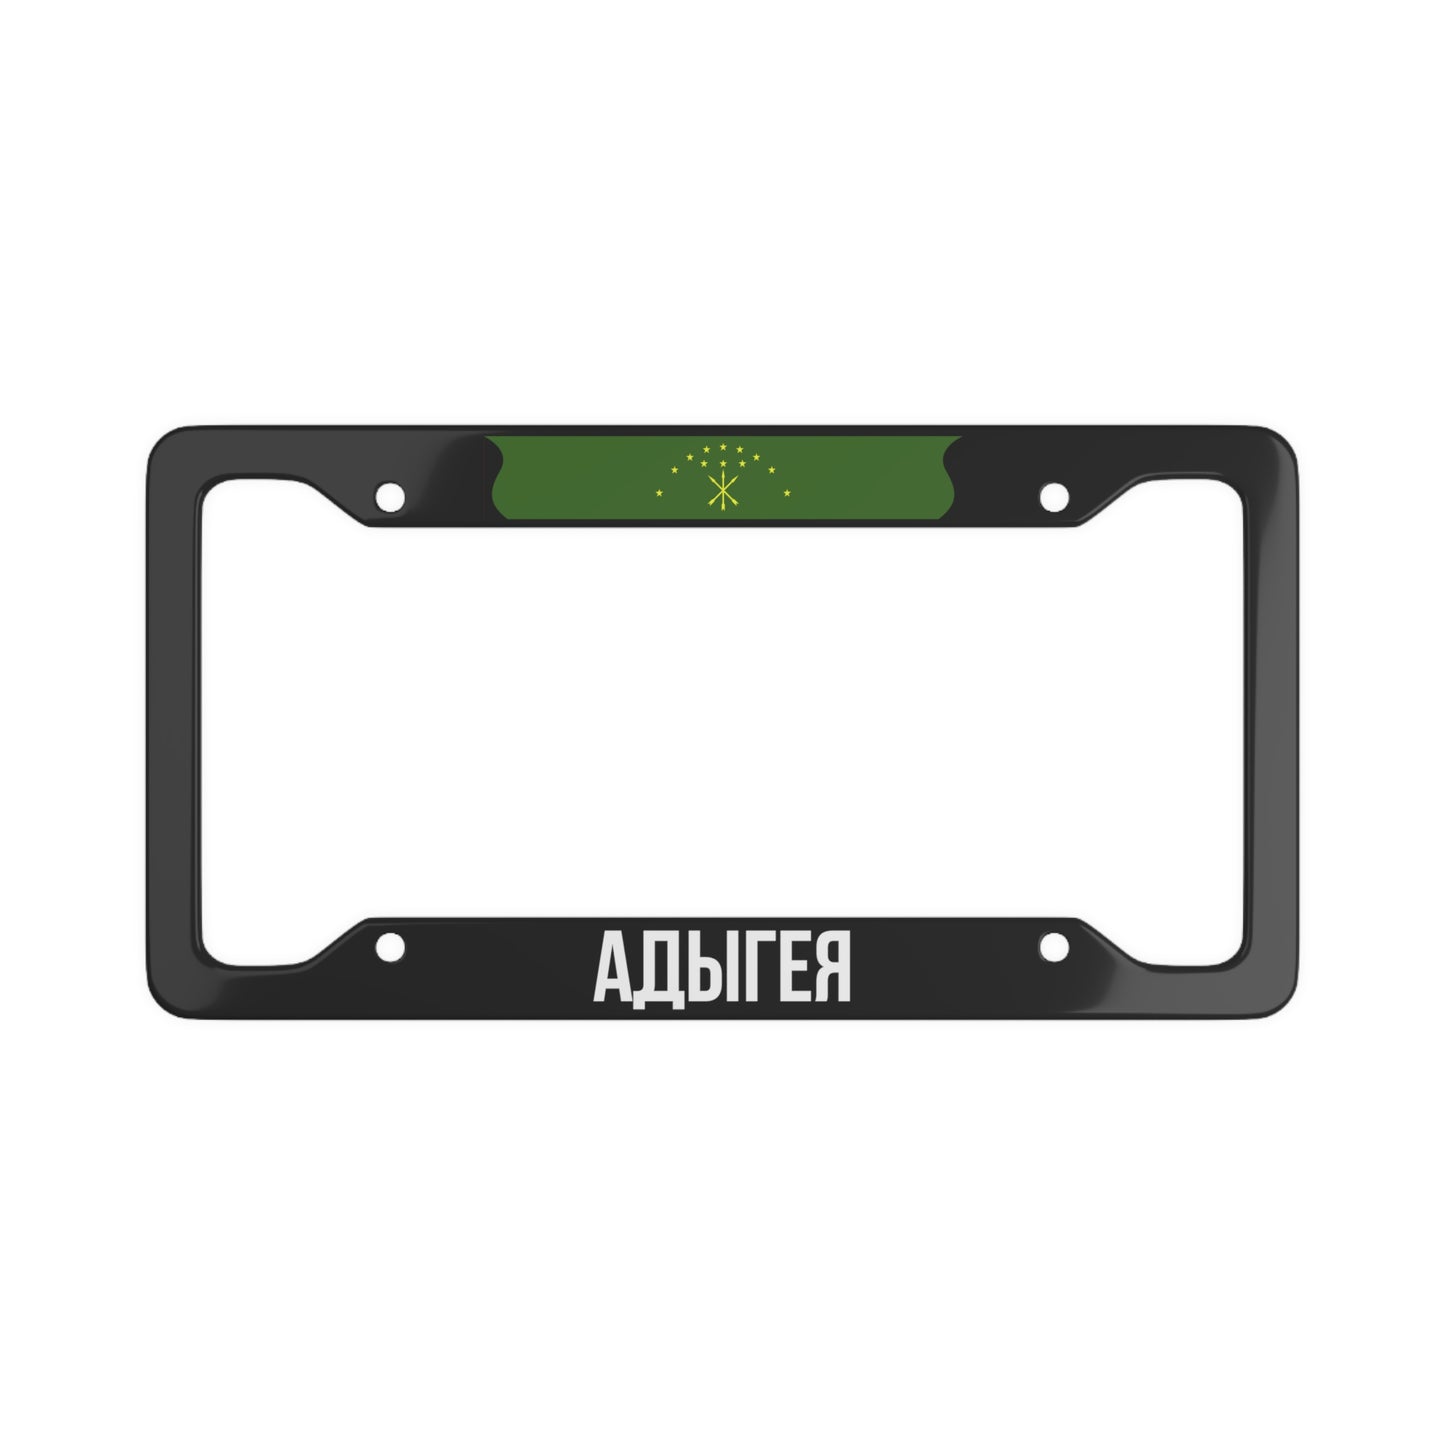 Адыгея License Plate Frame